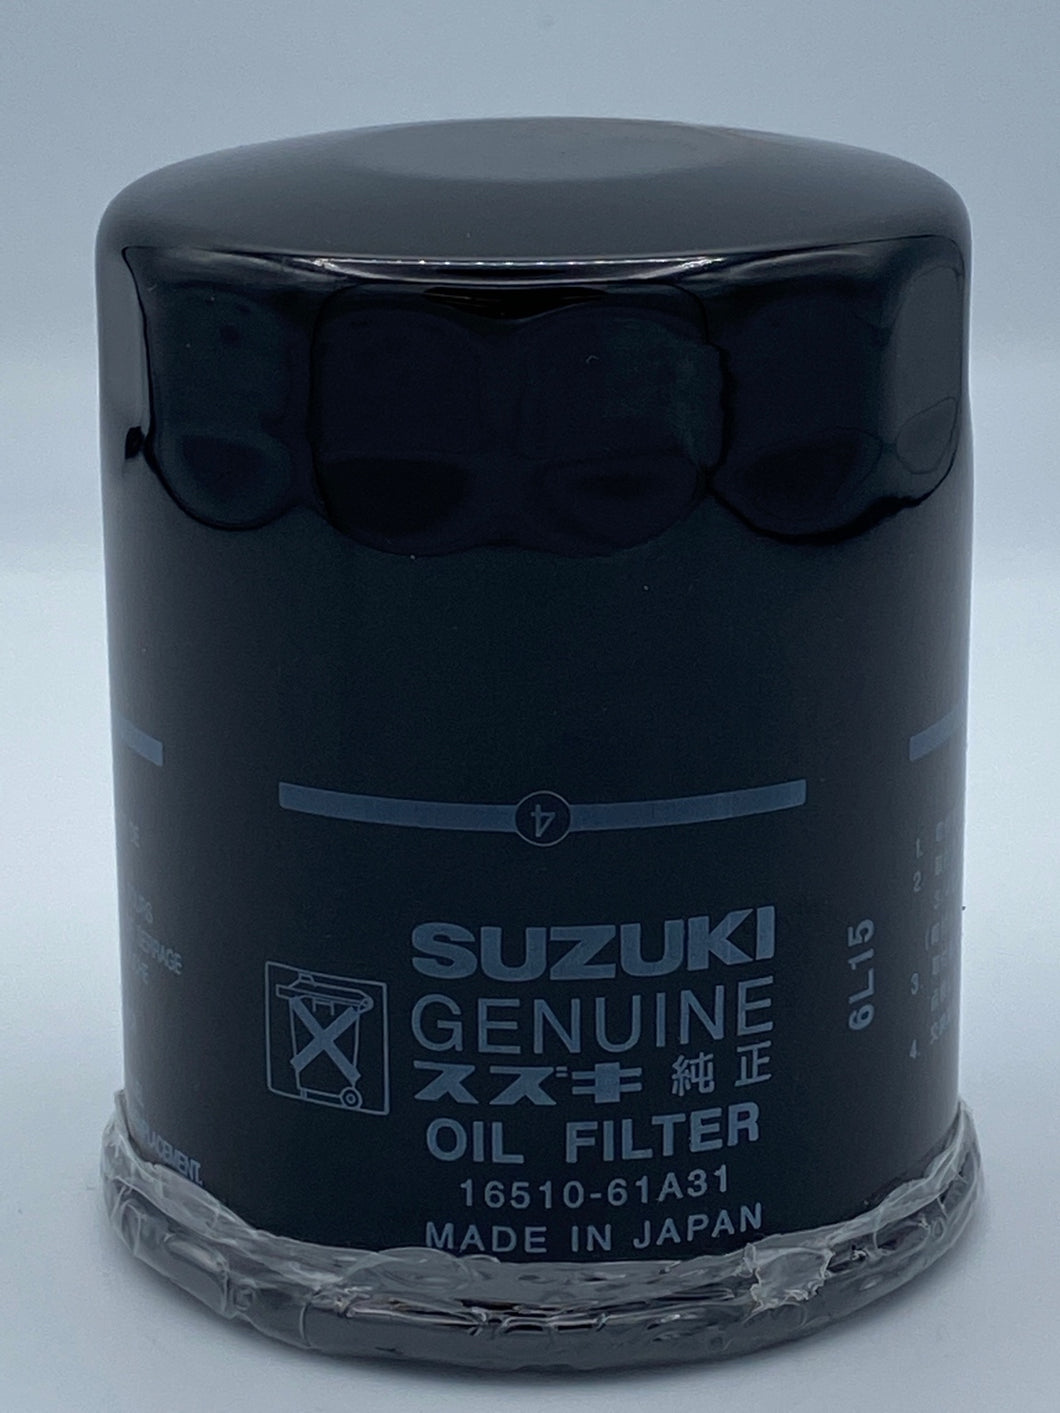 Suzuki Oil Filter 16510-61A31